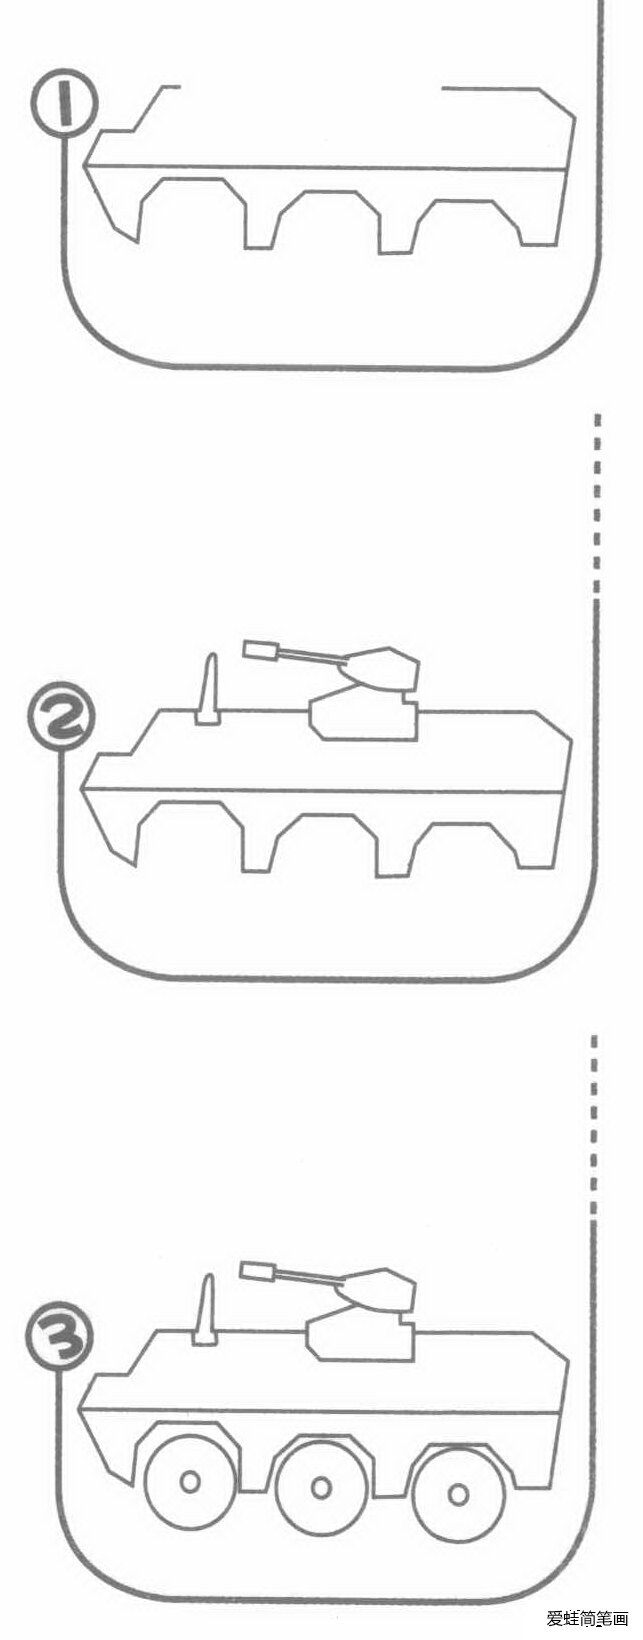 坦克简笔画分解步骤图